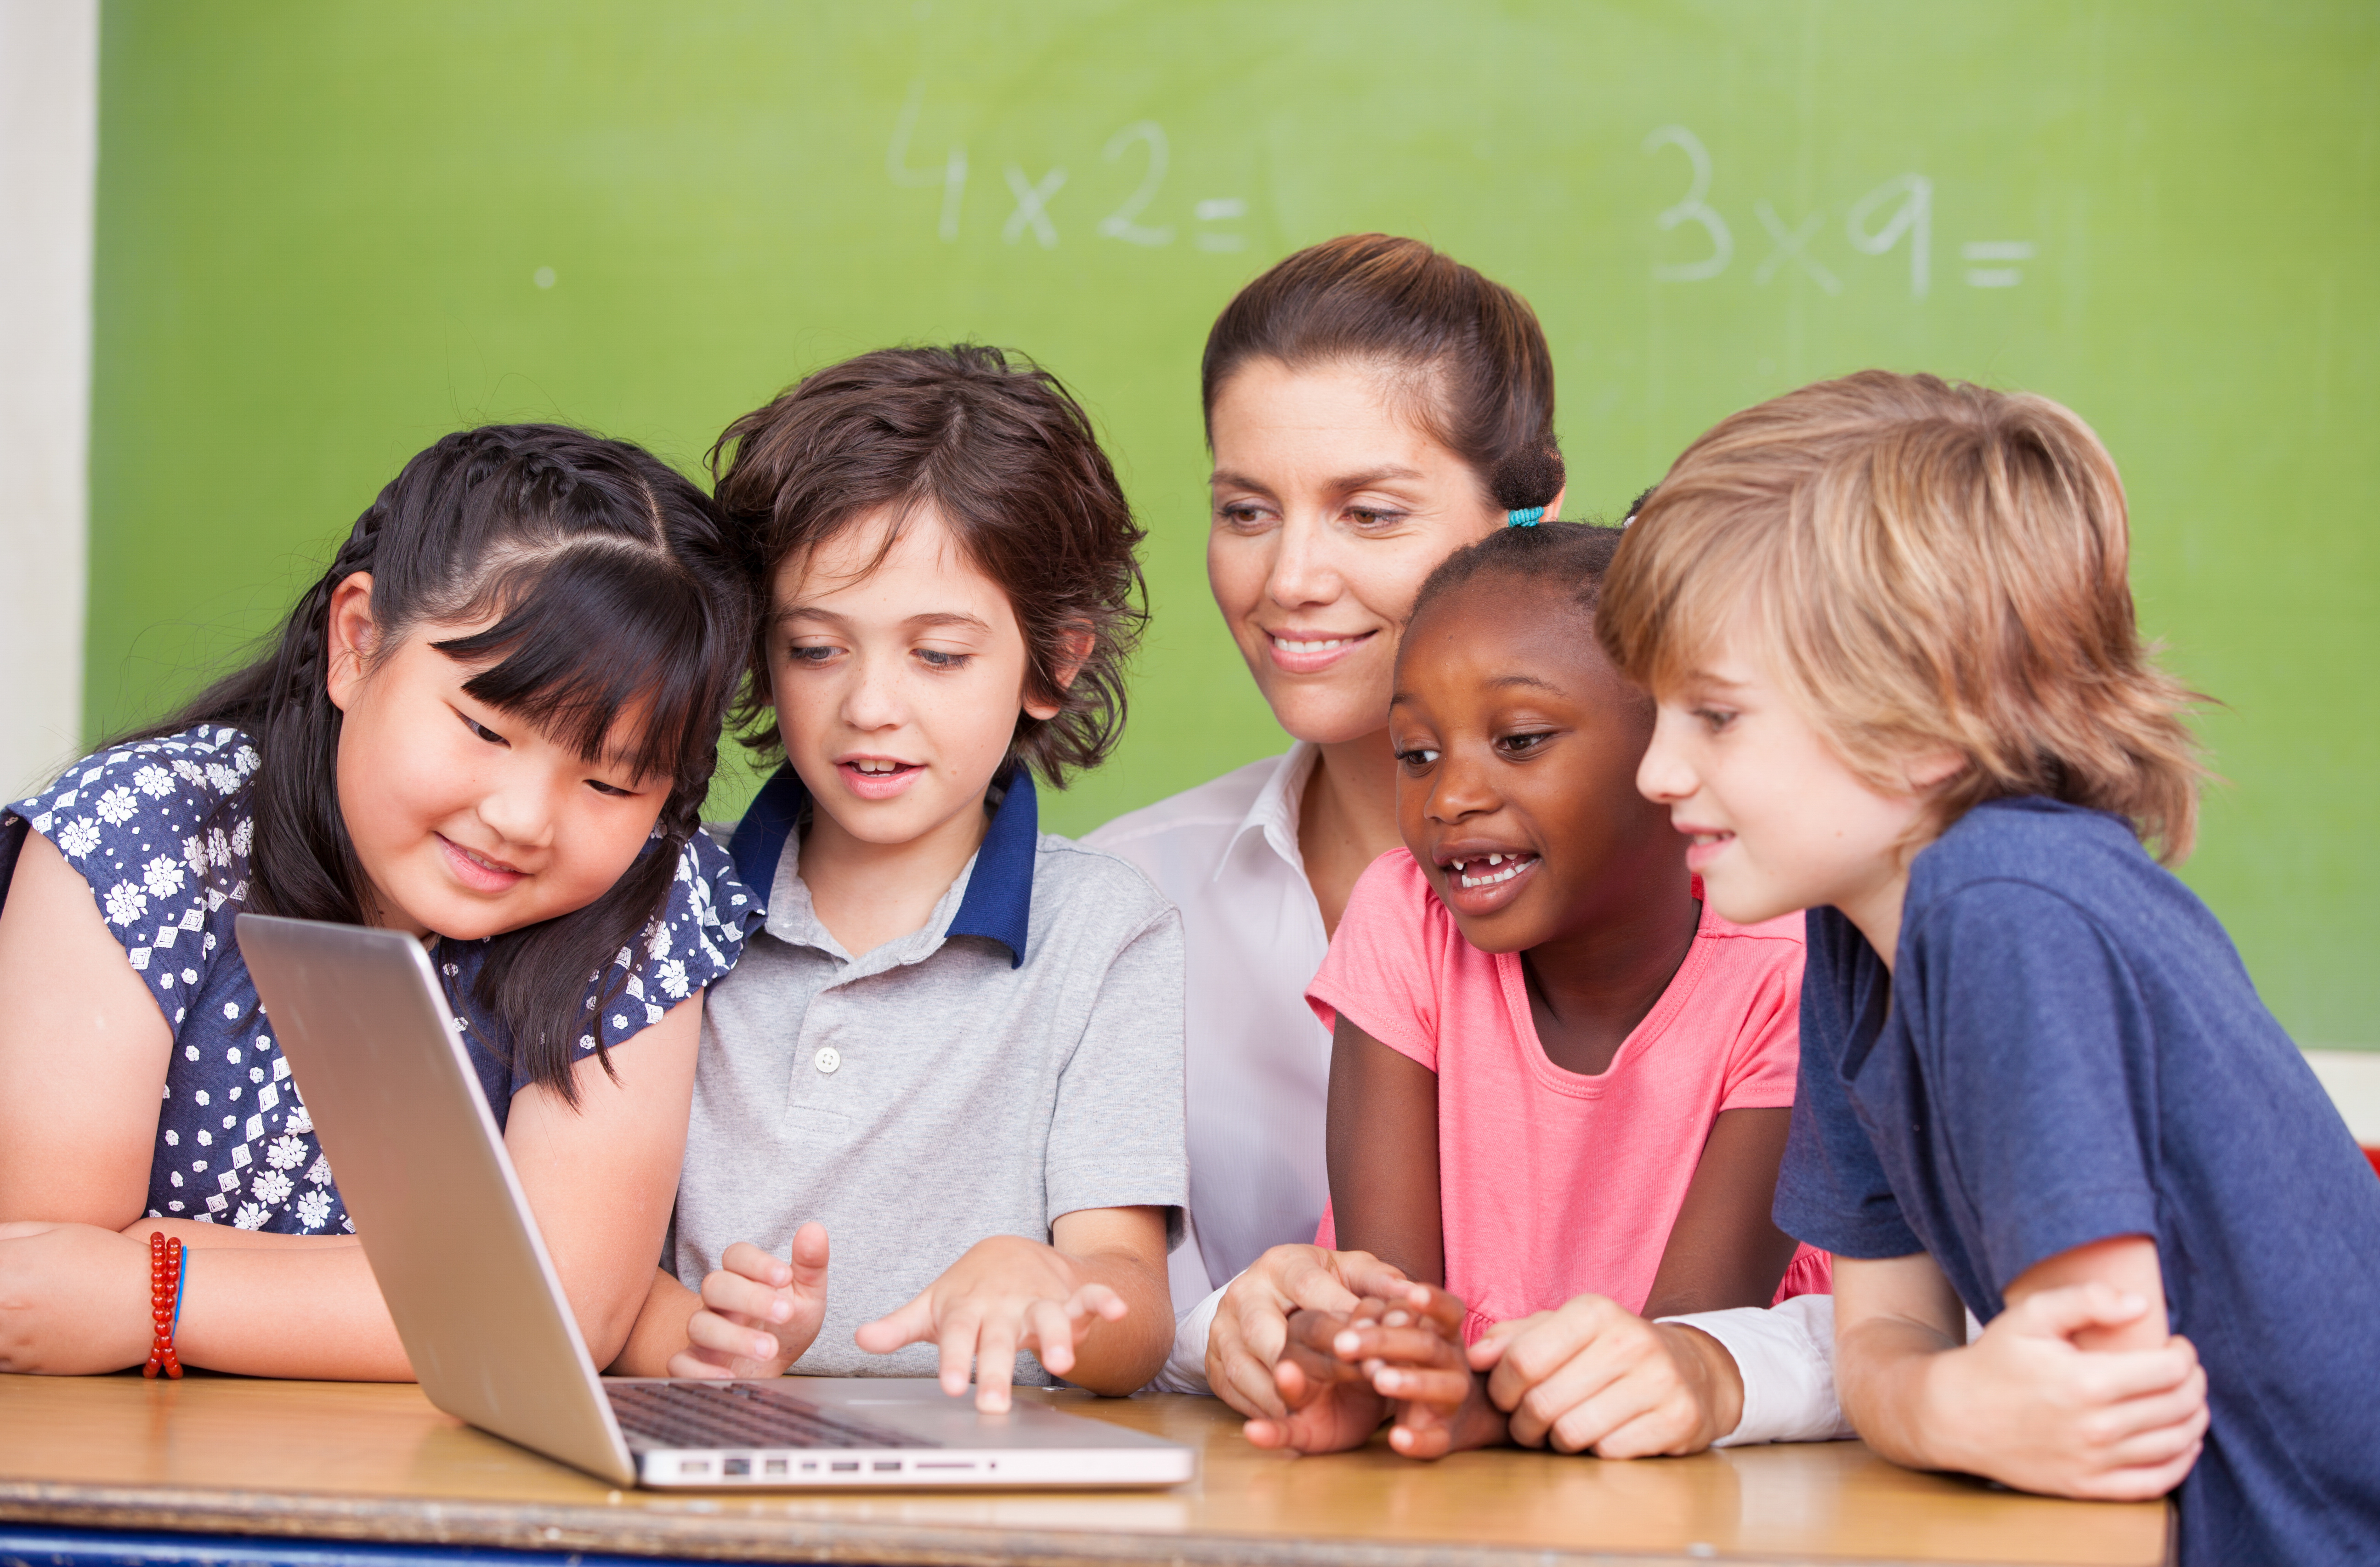 کلاس زبان آنلاین کودکان چگونه برگزار می شود؟